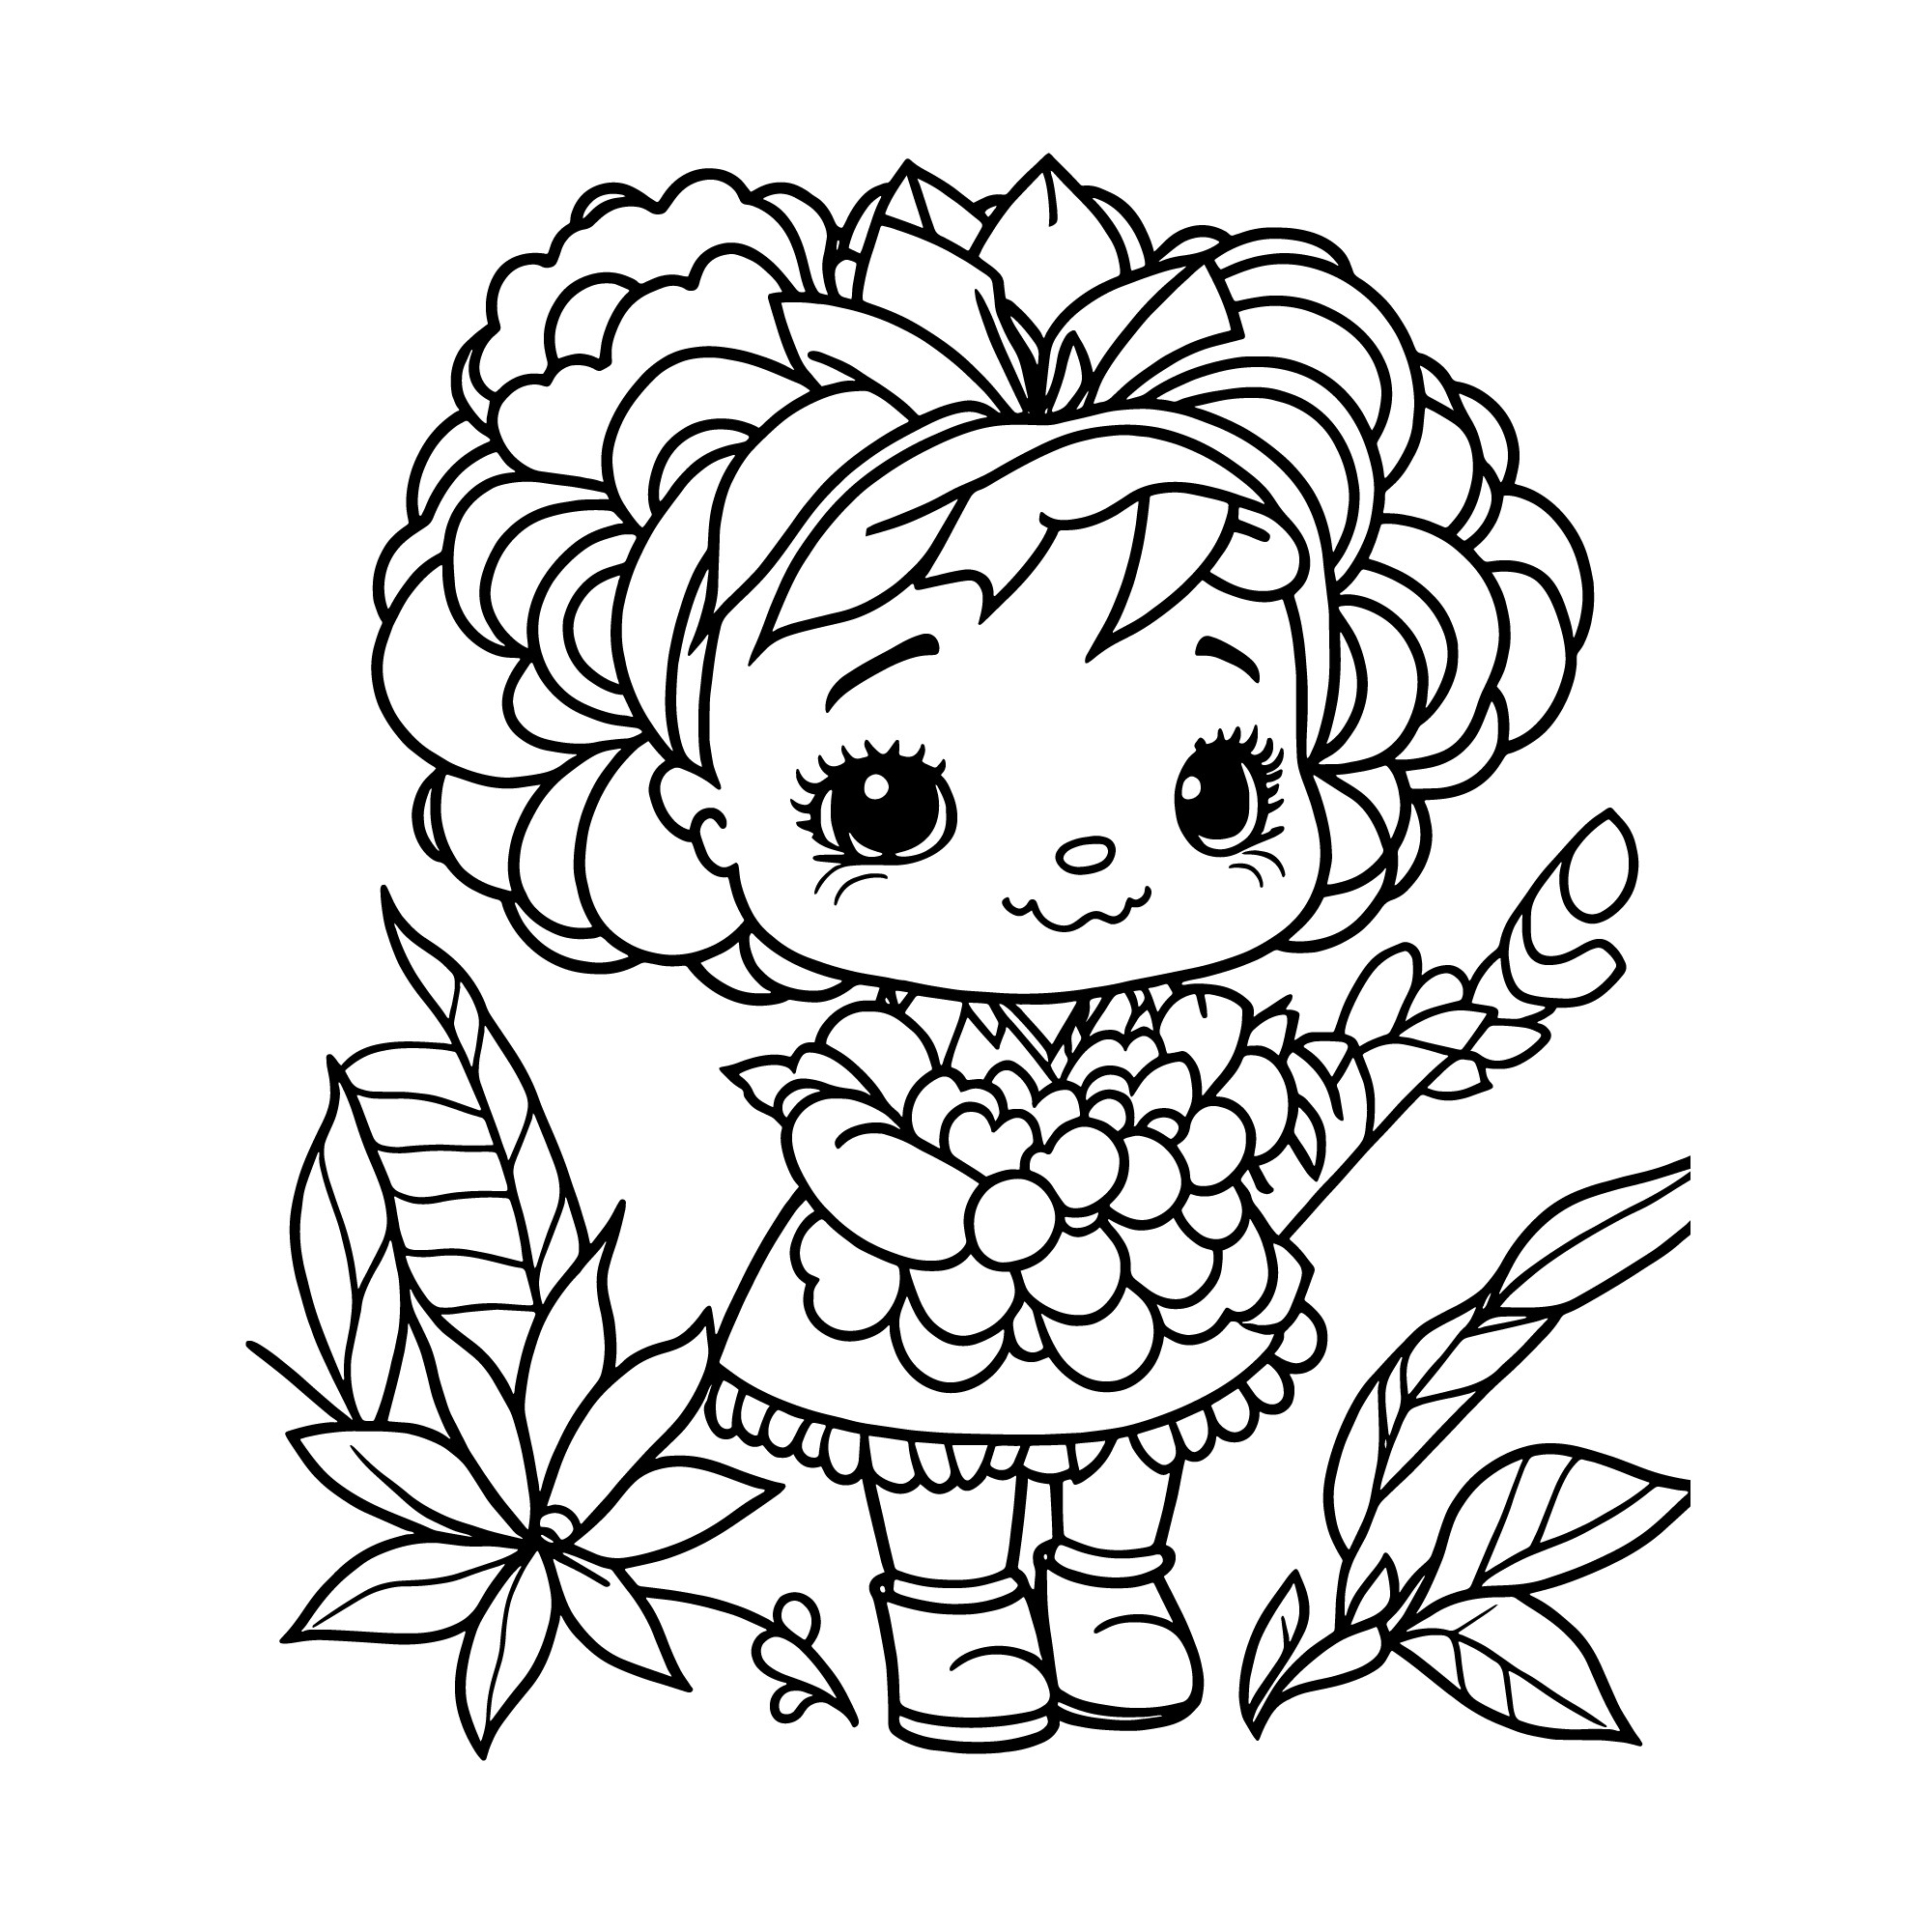 Раскраска для детей: кукла девочки с цветами в руках